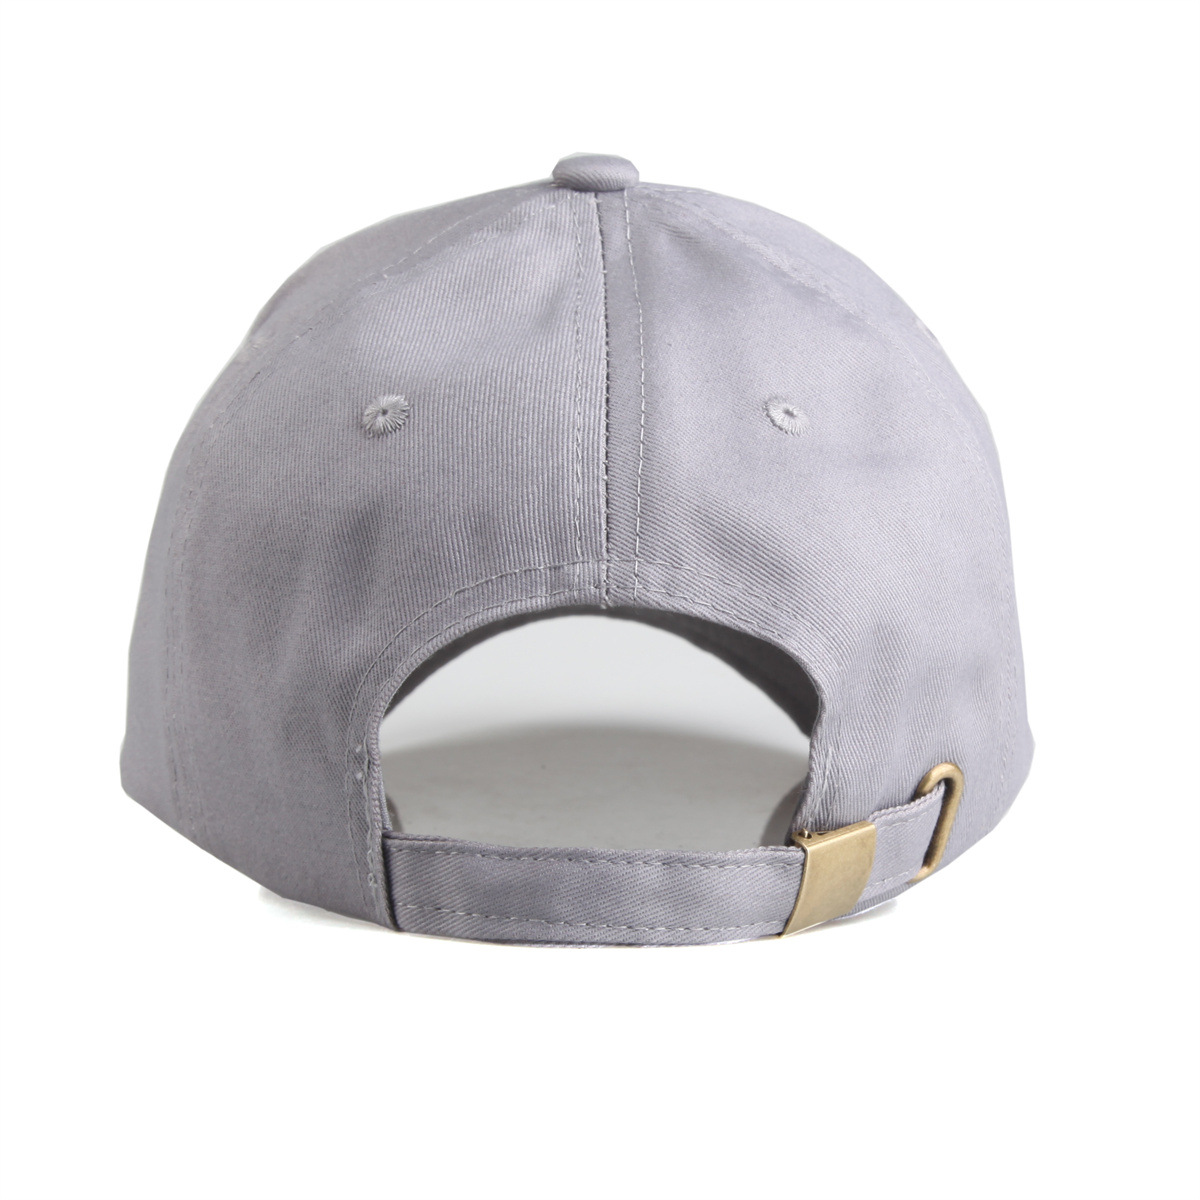 LU野球帽子男性女性複数の色ピークキャップソリッドカラー調整可能ユニセックス春夏太陽帽子シェードスポーツ野球帽子